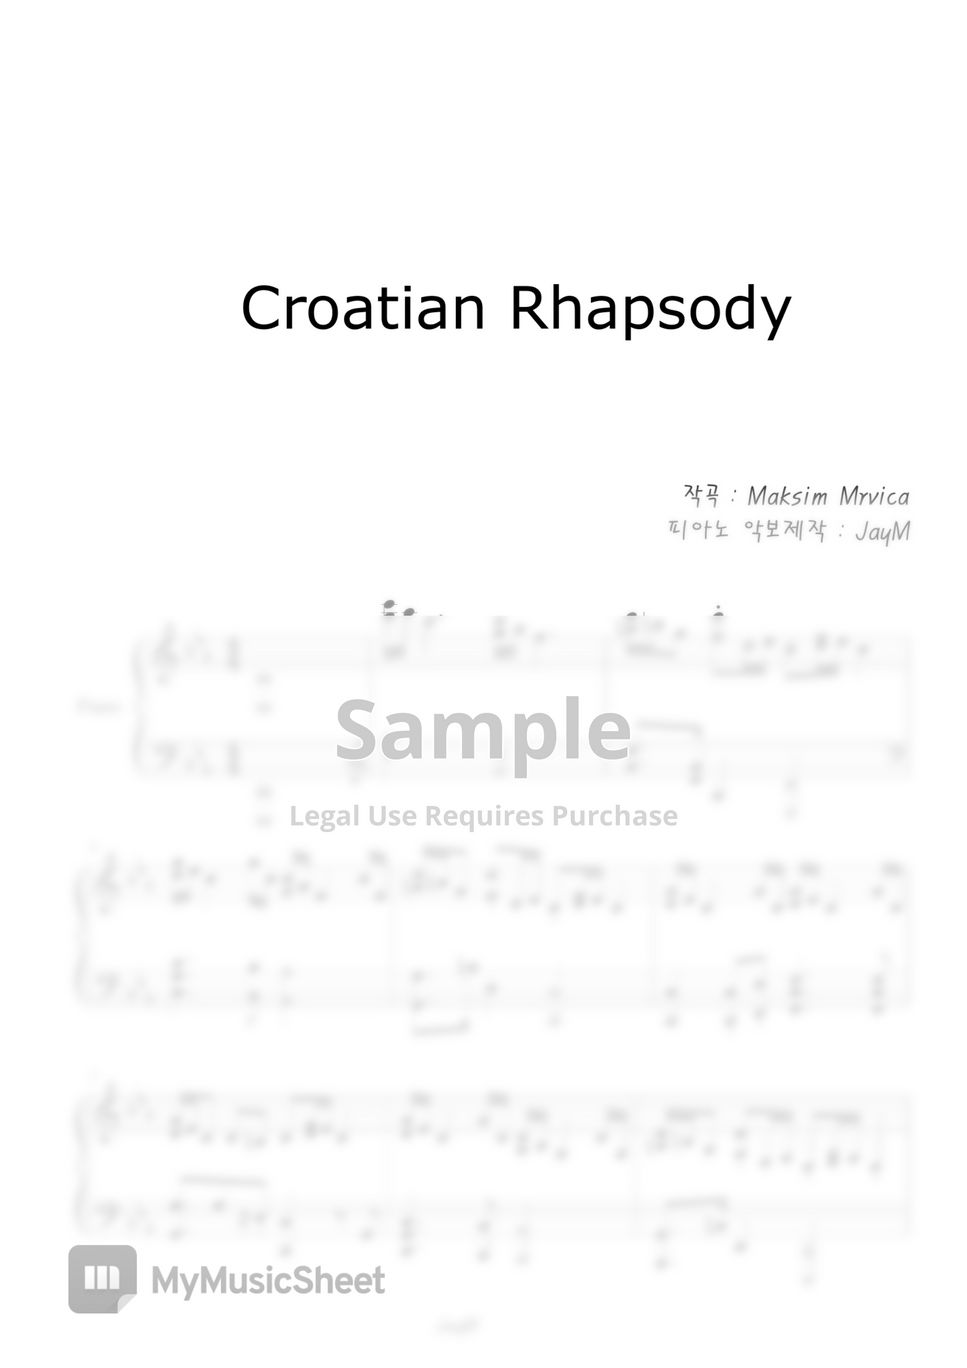 Maksim Mvrvica - Croatian Rhapsody by JayM